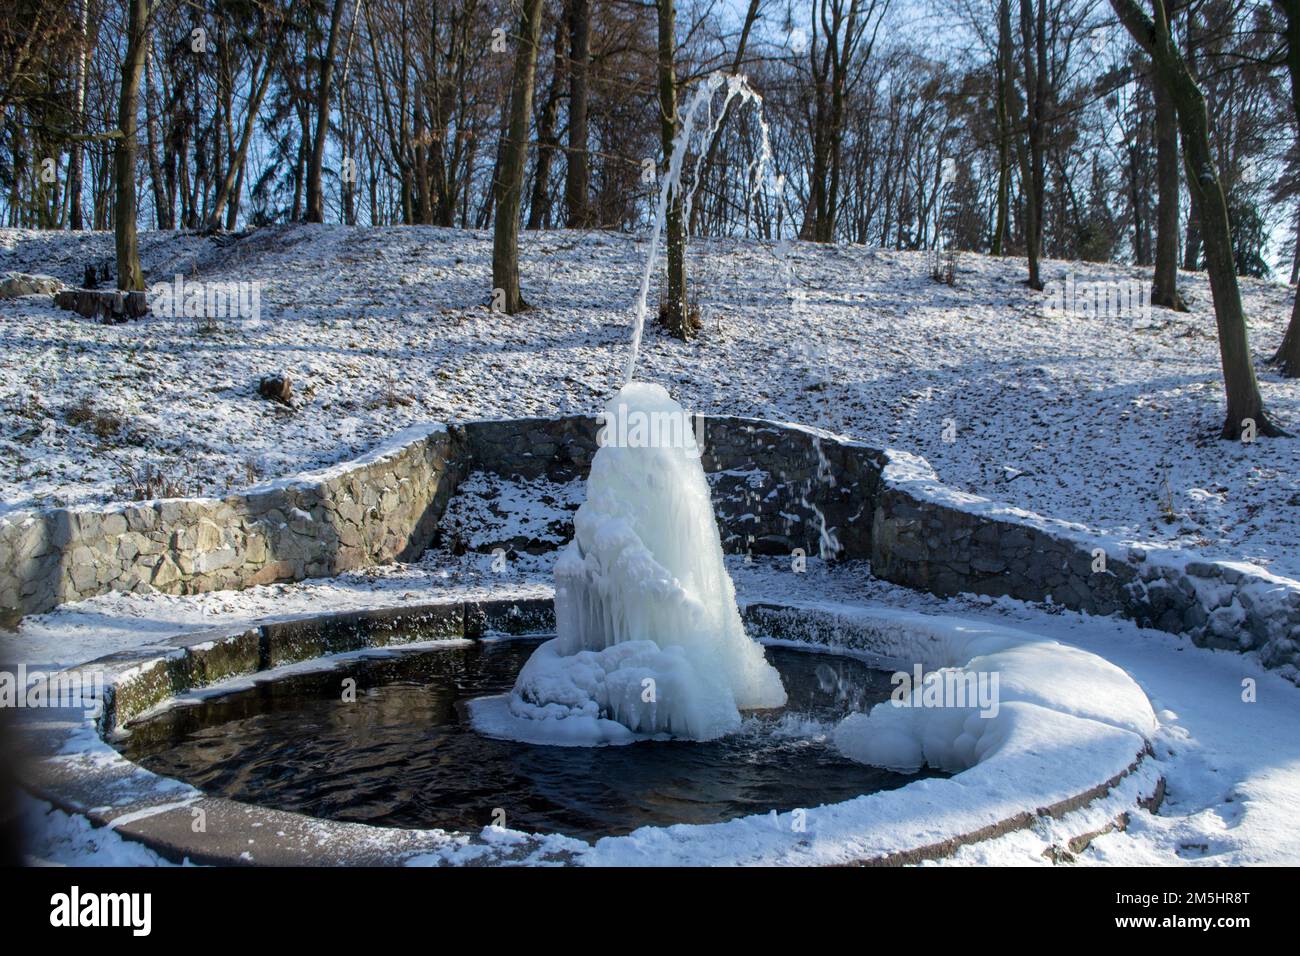 Fontaine glacée dans le parc par une journée ensoleillée en hiver. Fontaine avec eau gelée. Un jet d'eau d'une fontaine qui a glacé dans le froid. Arrière-plan couvert de glace et de neige dans le parc le jour Banque D'Images